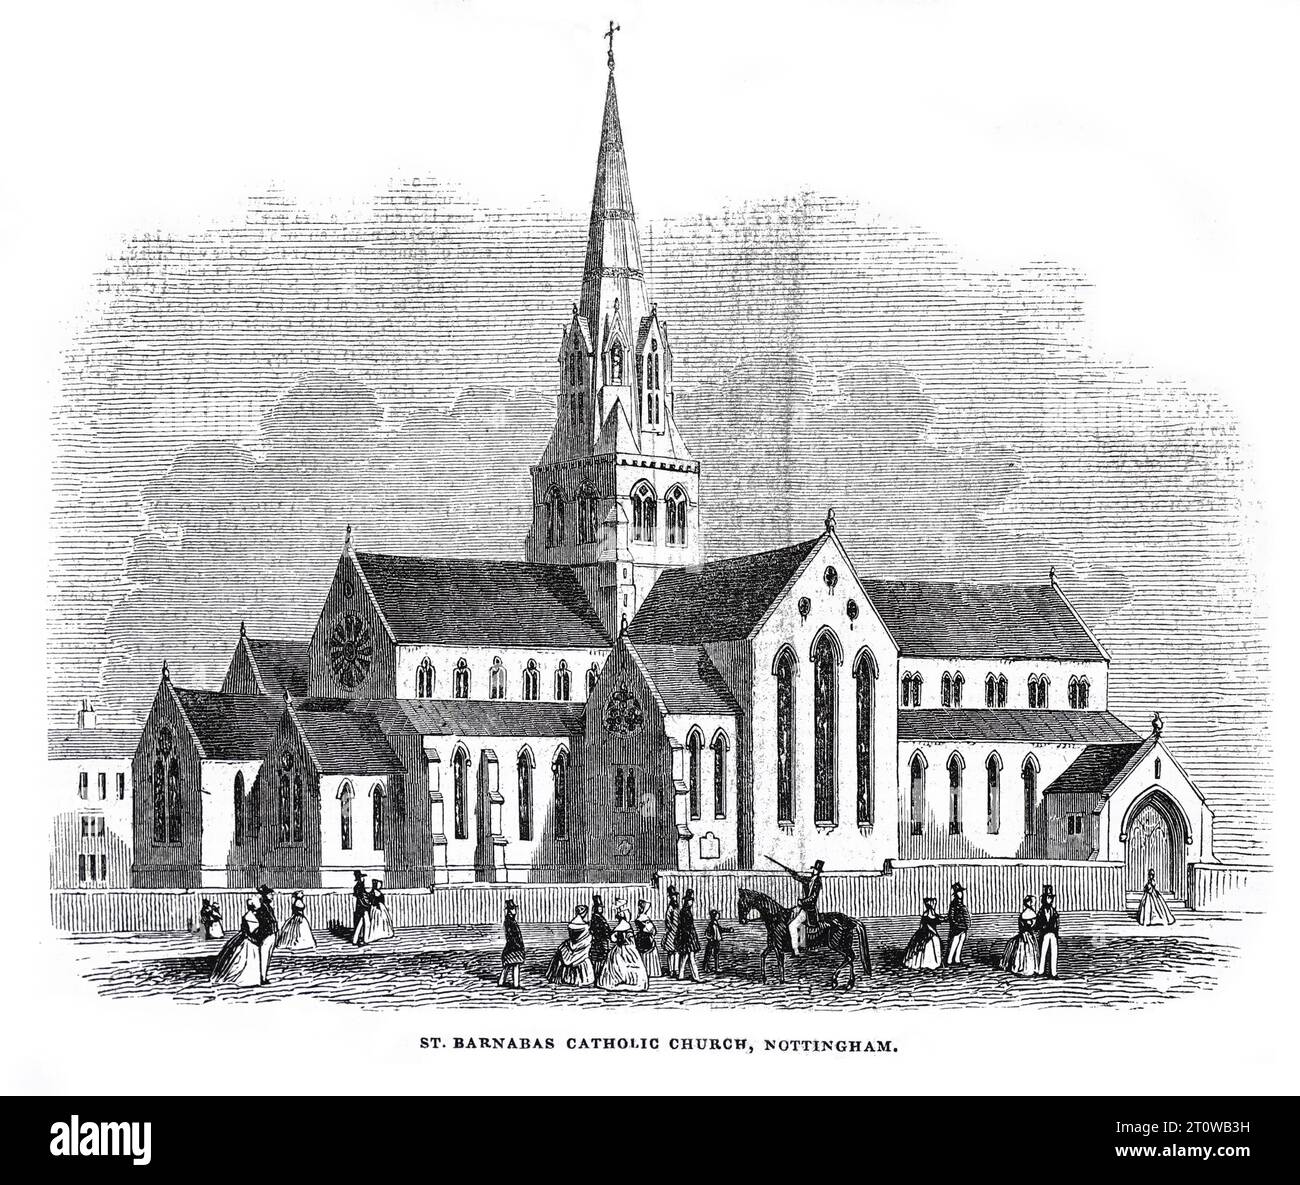 Cathédrale catholique romaine de St Barnabas Nottingham, consacrée le 27 août 1844. Illustration en noir et blanc du London Illustrated News ; 31 août 1844. Banque D'Images